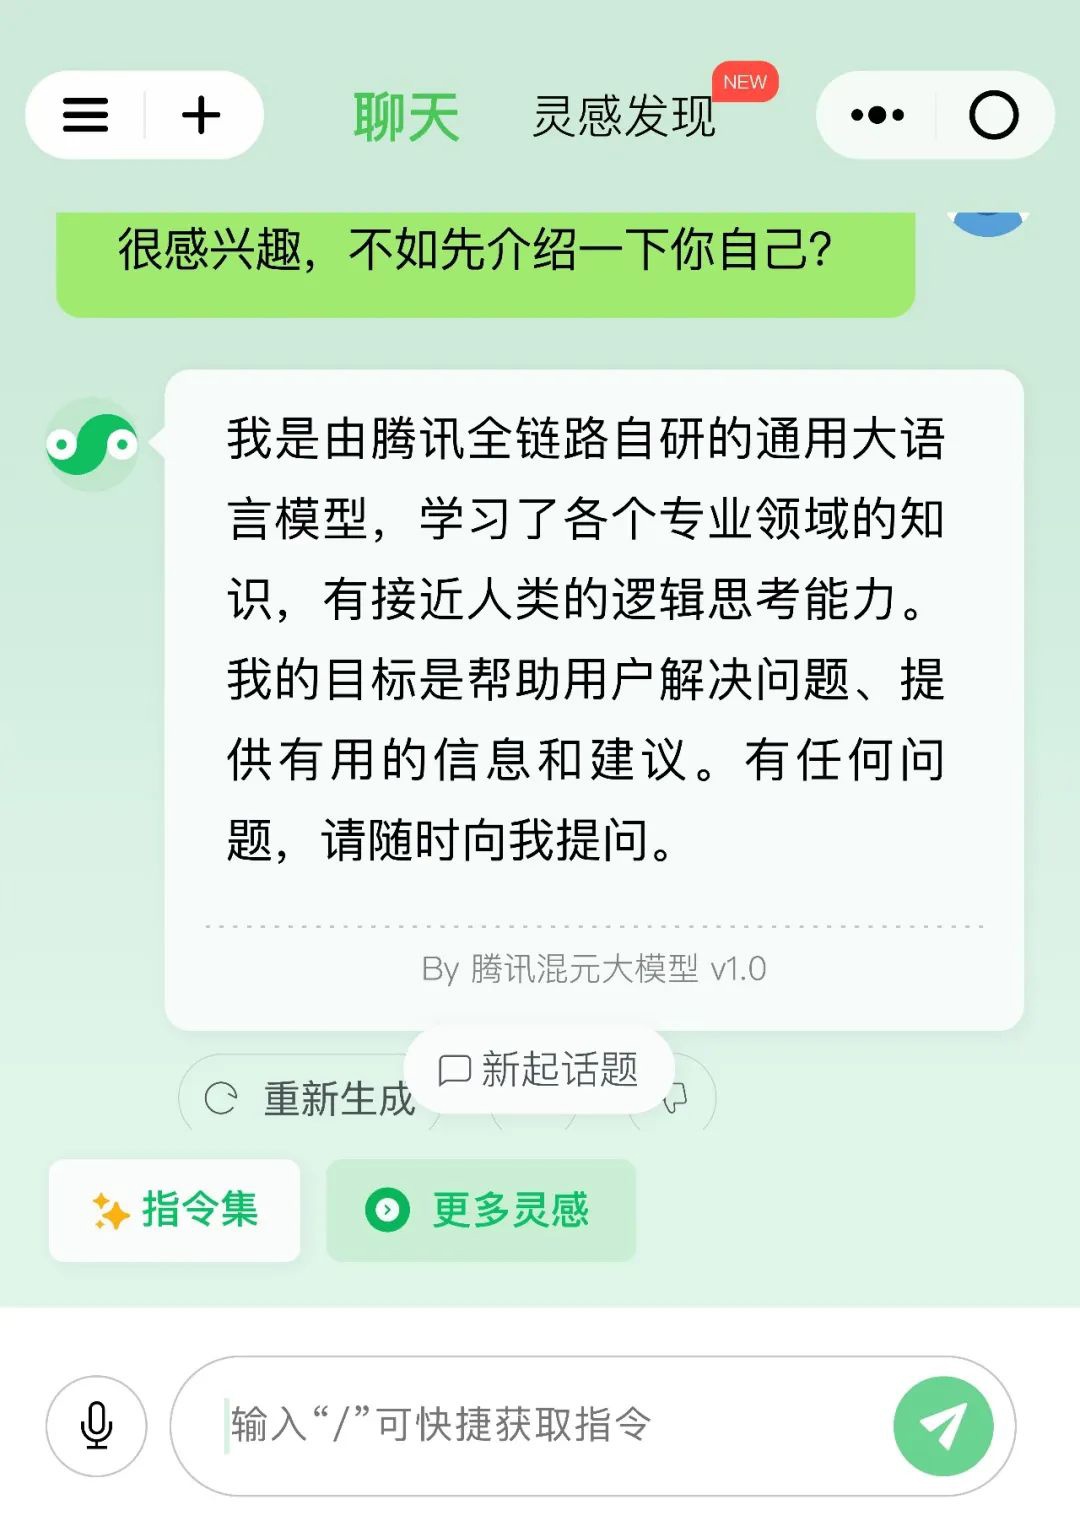 「Tencent Hunyuan Assistant」WeChat アプレットが内部テスト用に公開され、キューイング エクスペリエンスを申請できるようになりました